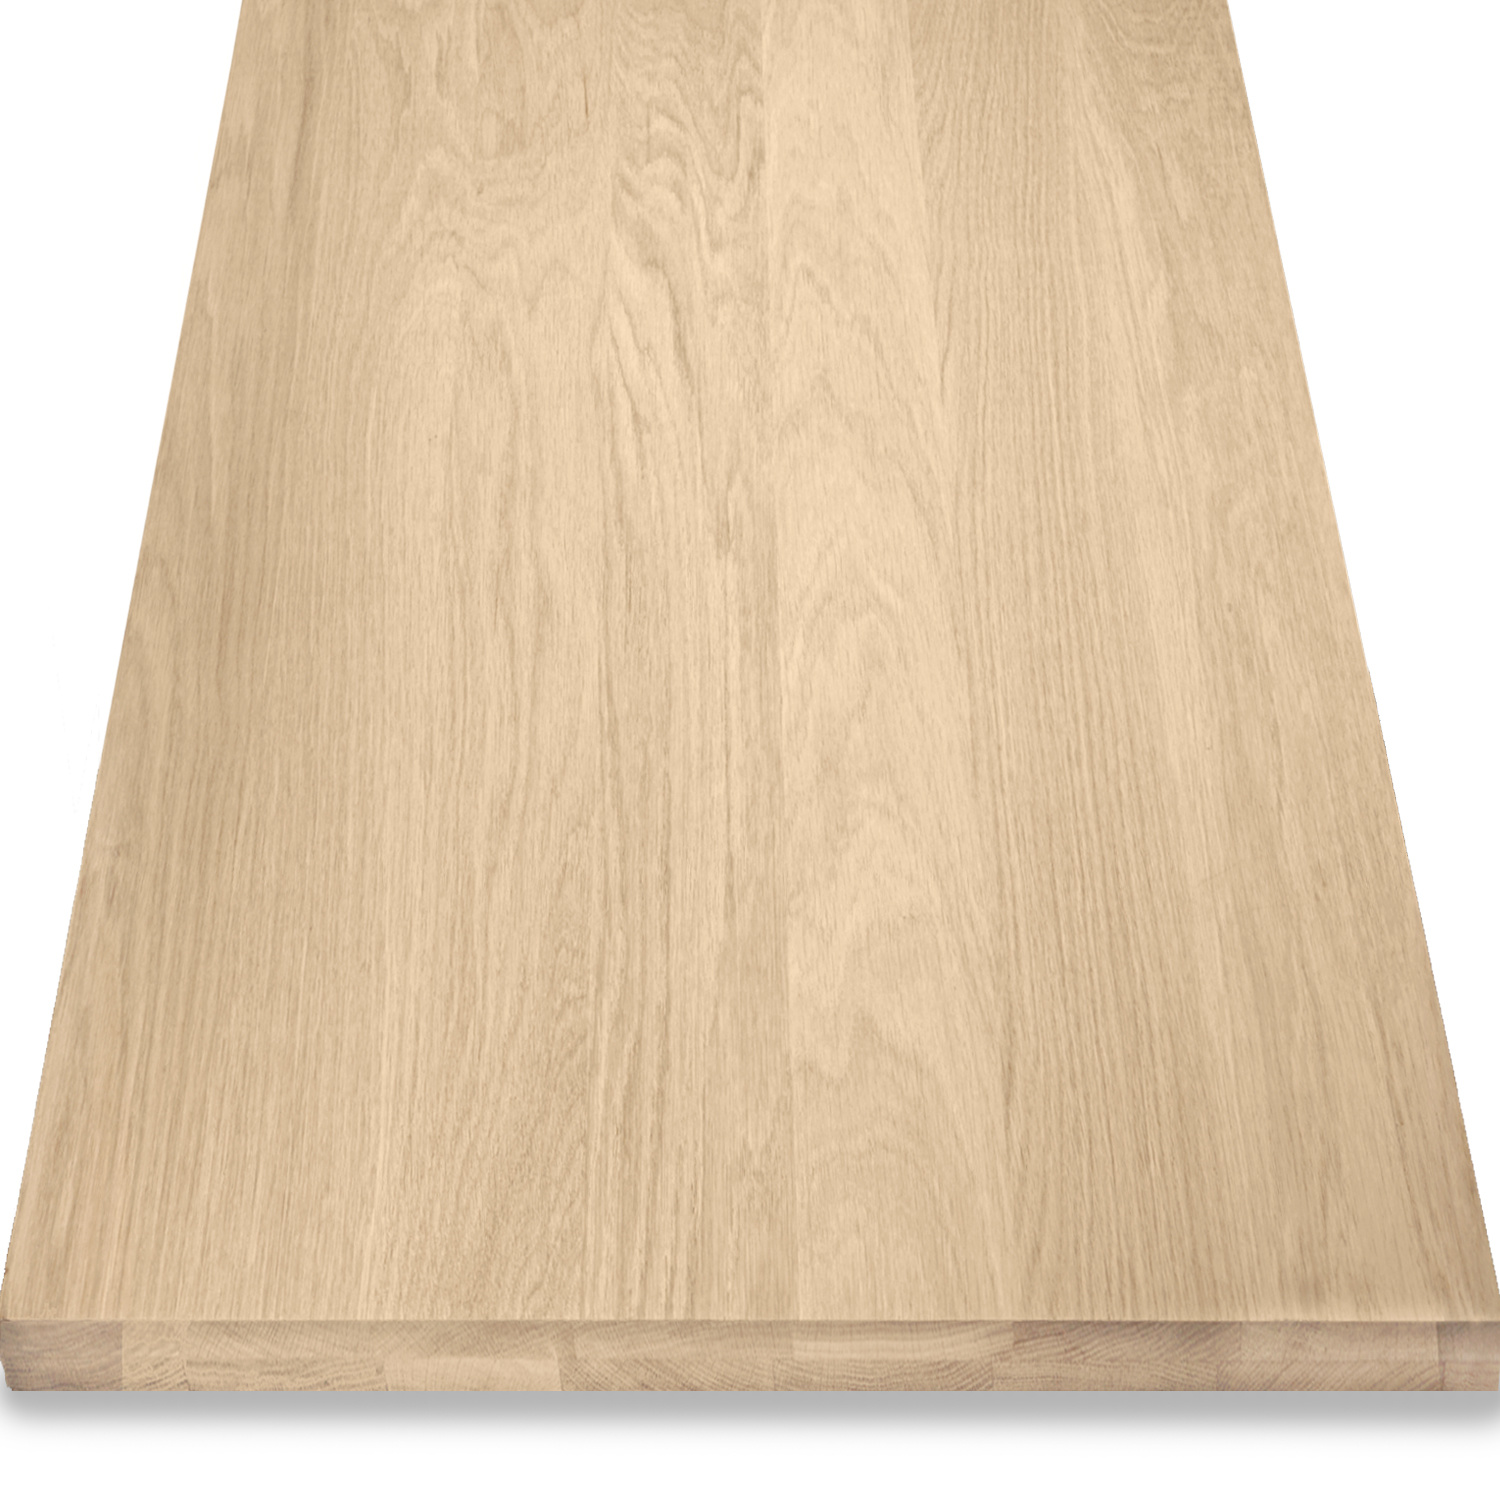  Leimholzplatte Eiche nach Maß - 4,6 cm dick (2-lagig) - Eichenholz A-Qualität- Eiche Massivholzplatte - verleimt & künstlich getrocknet (HF 8-12%) - 15-120x20-350 cm